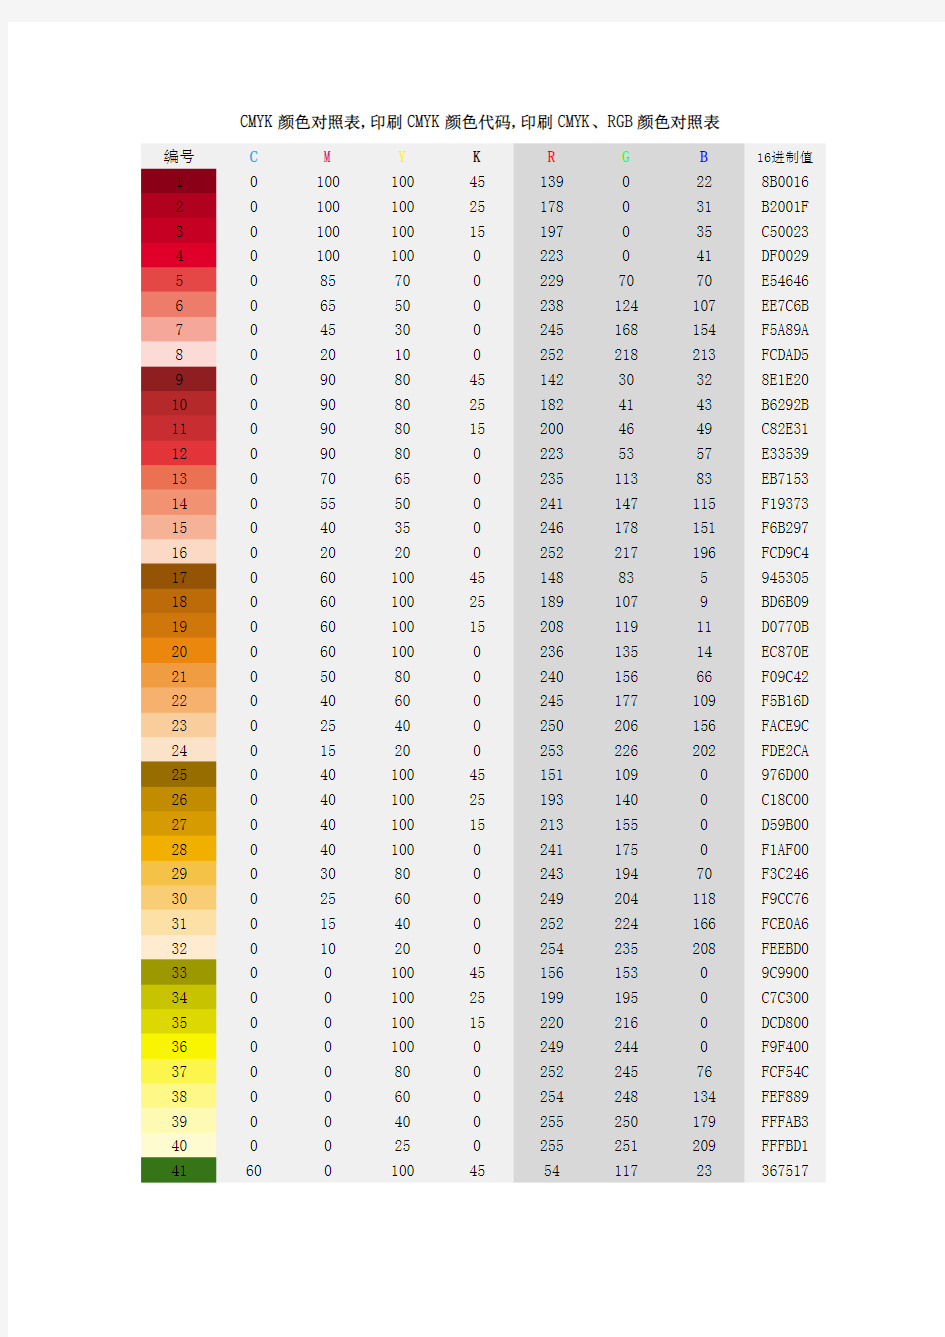 CMYK颜色对照表,印刷CMYK颜色代码,印刷CMYK、RGB颜色对照表